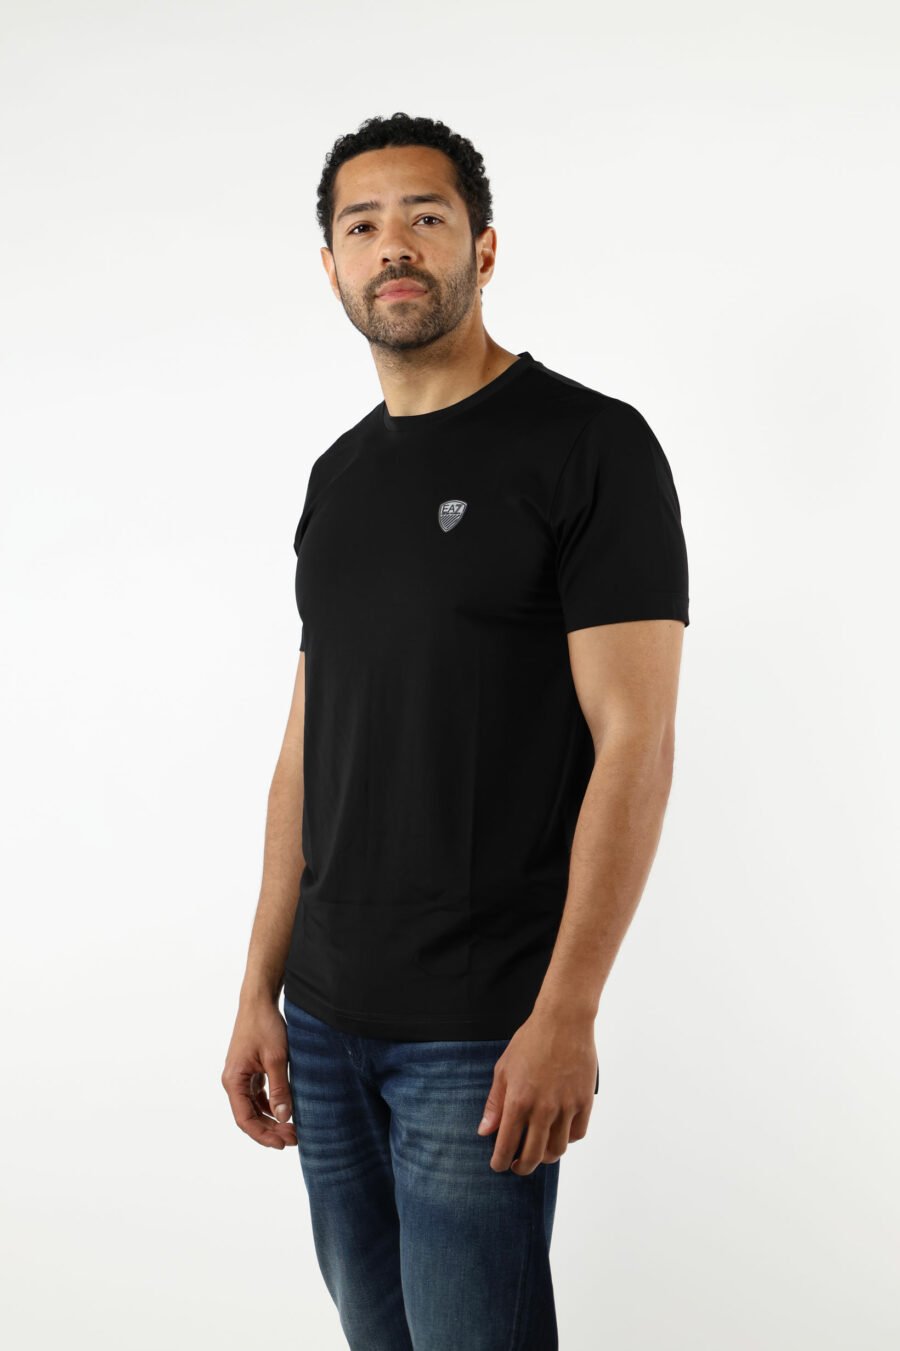 Camiseta negra con minilogo "lux identity" escudo - 110837